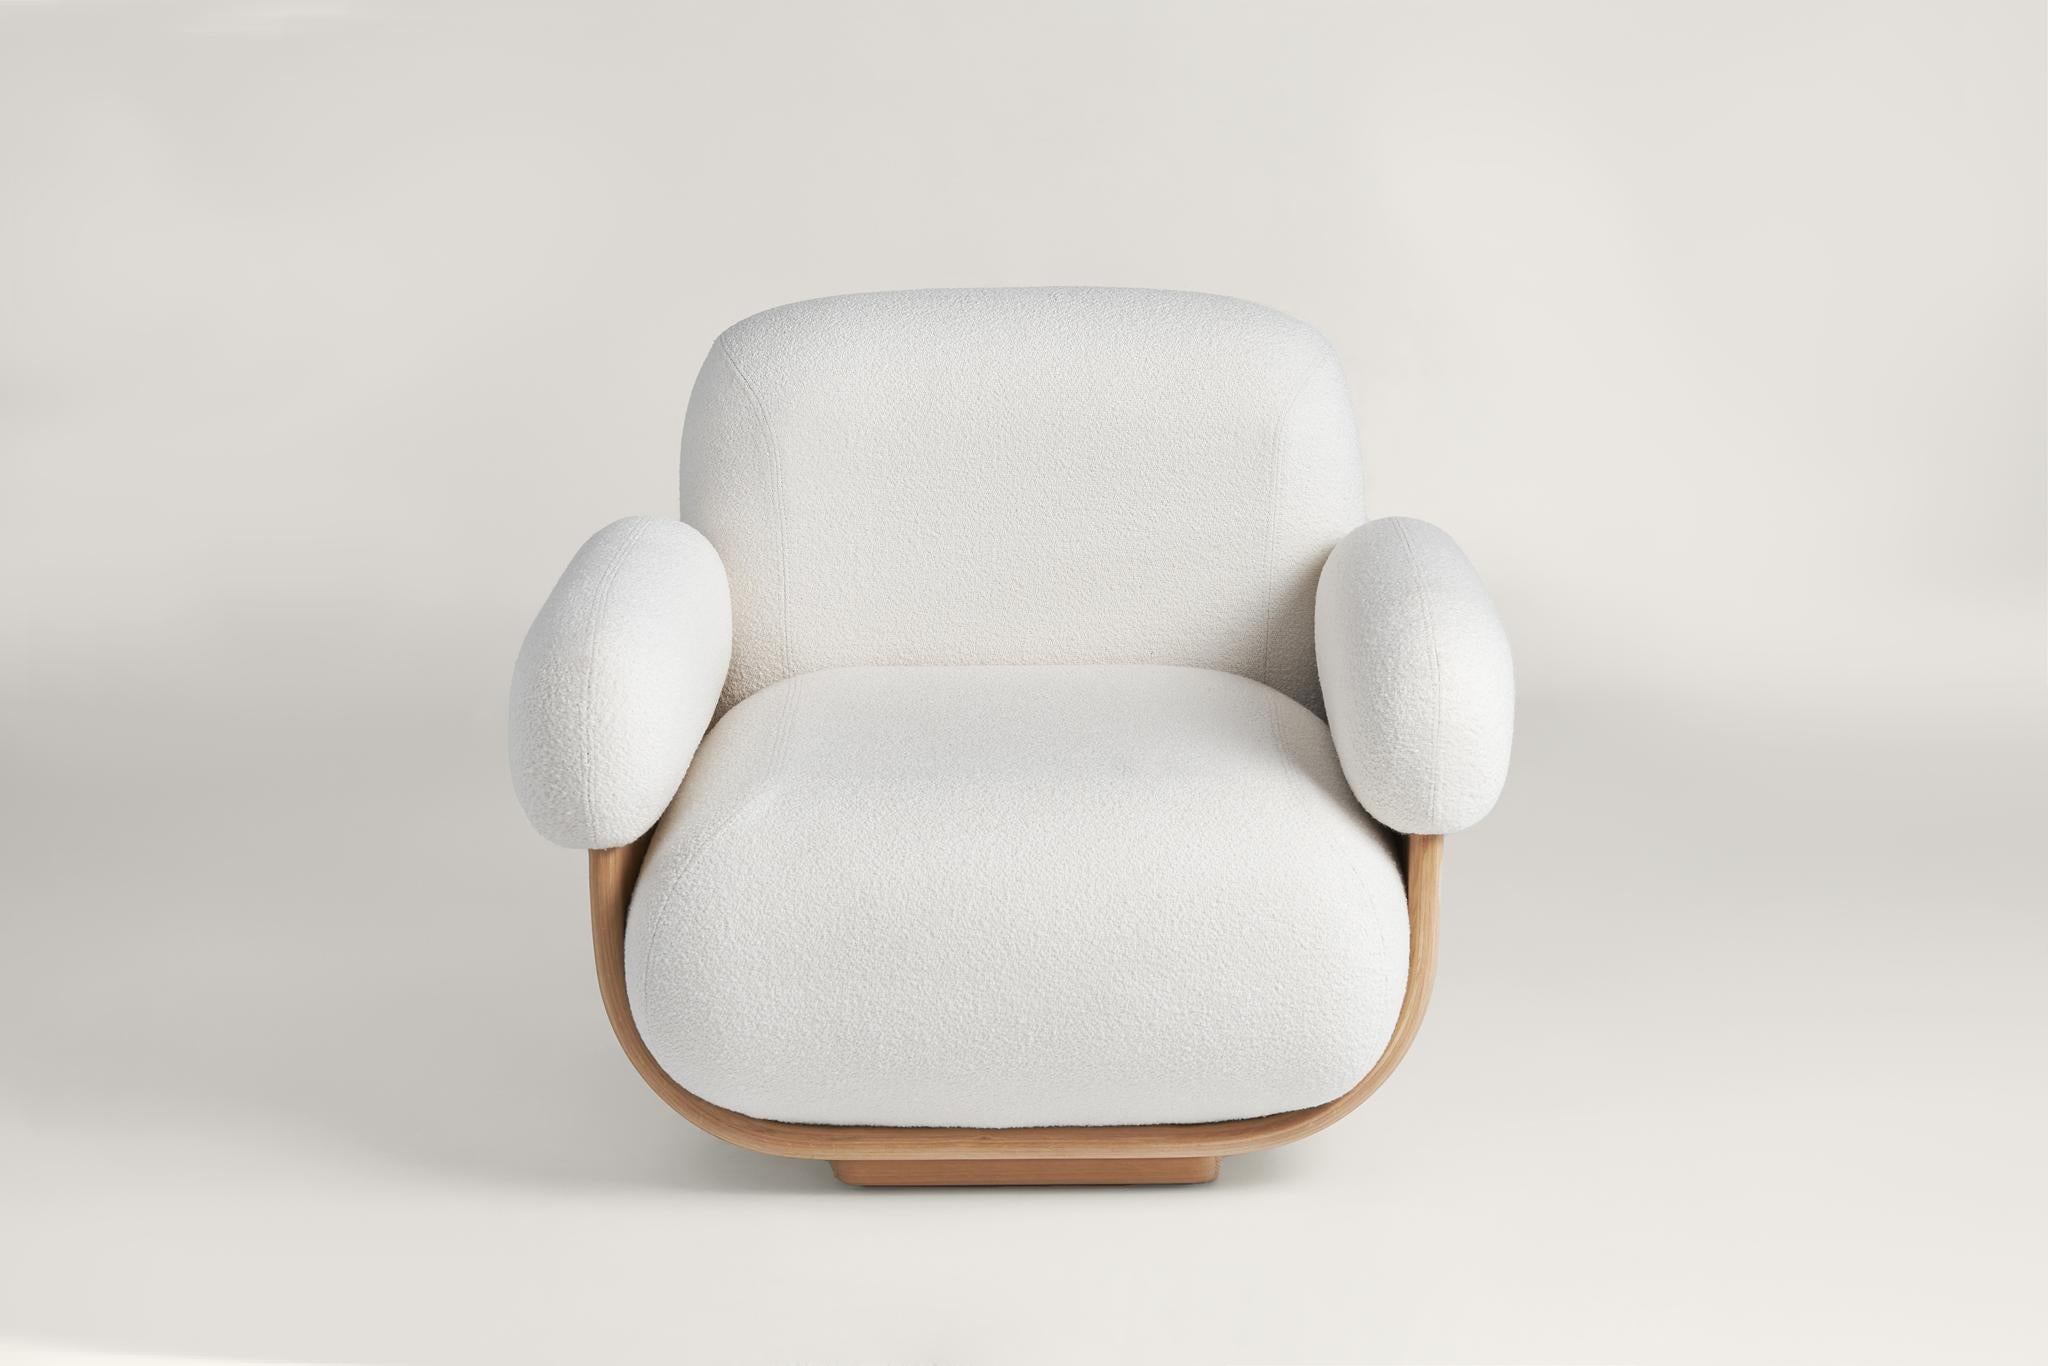 Die Rückenlehne des Stuhls ist perfekt angewinkelt, um eine ergonomische Unterstützung zu bieten, während die Armlehnen eine bequeme Ablage für die Arme bieten. Damit ist der Cannoli Lounge Chair der perfekte Ort, um es sich mit einem guten Buch